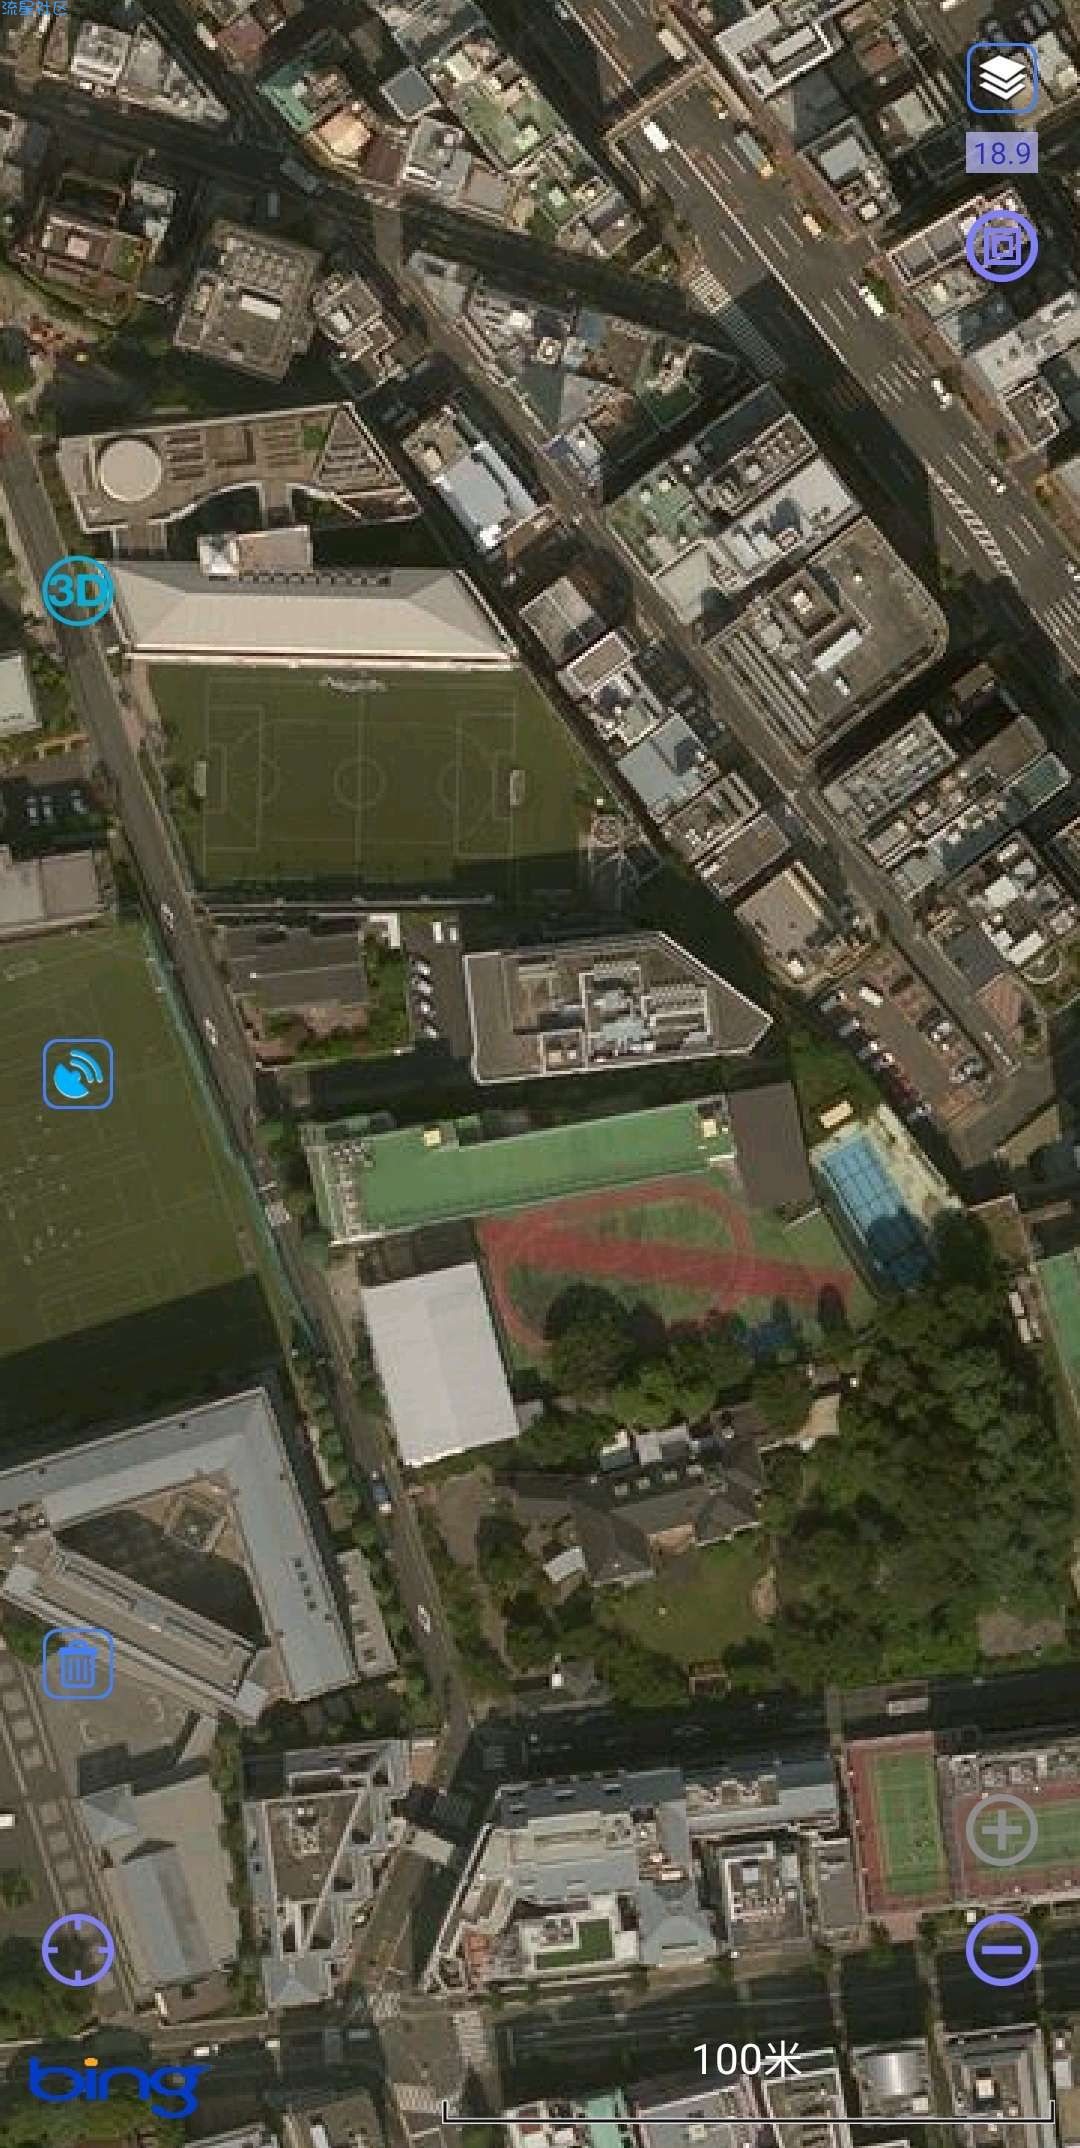 奥维卫星实景地图下载图片